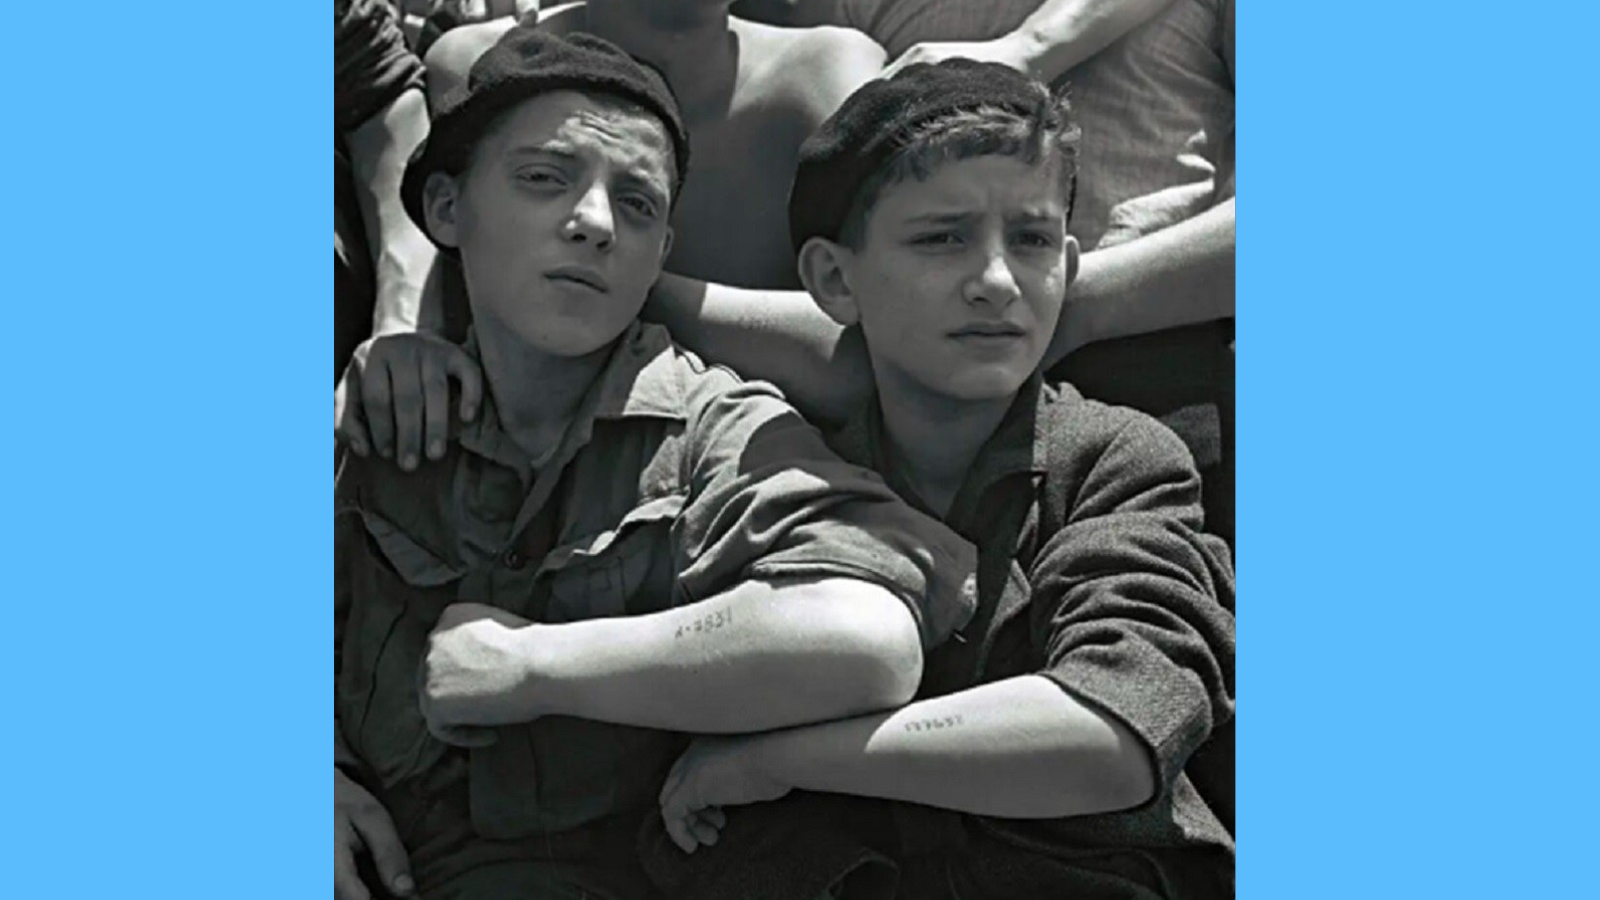 صورة أرشيفية من غيتي موصوفة بـ "الشباب اليهود الذين تم إنقاذهم من معتقل أوشفيتز النازي، يظهرون وشماً على ساعديهم وهم على متن سفينة الهجرة، ماتاروا، التقطت الصورة 1 يوليو/تموز 1945 في ميناء حيفا، خلال الانتداب البريطاني لفلسطين، فيما سيصبح العام التالي دولة إسرائيل".